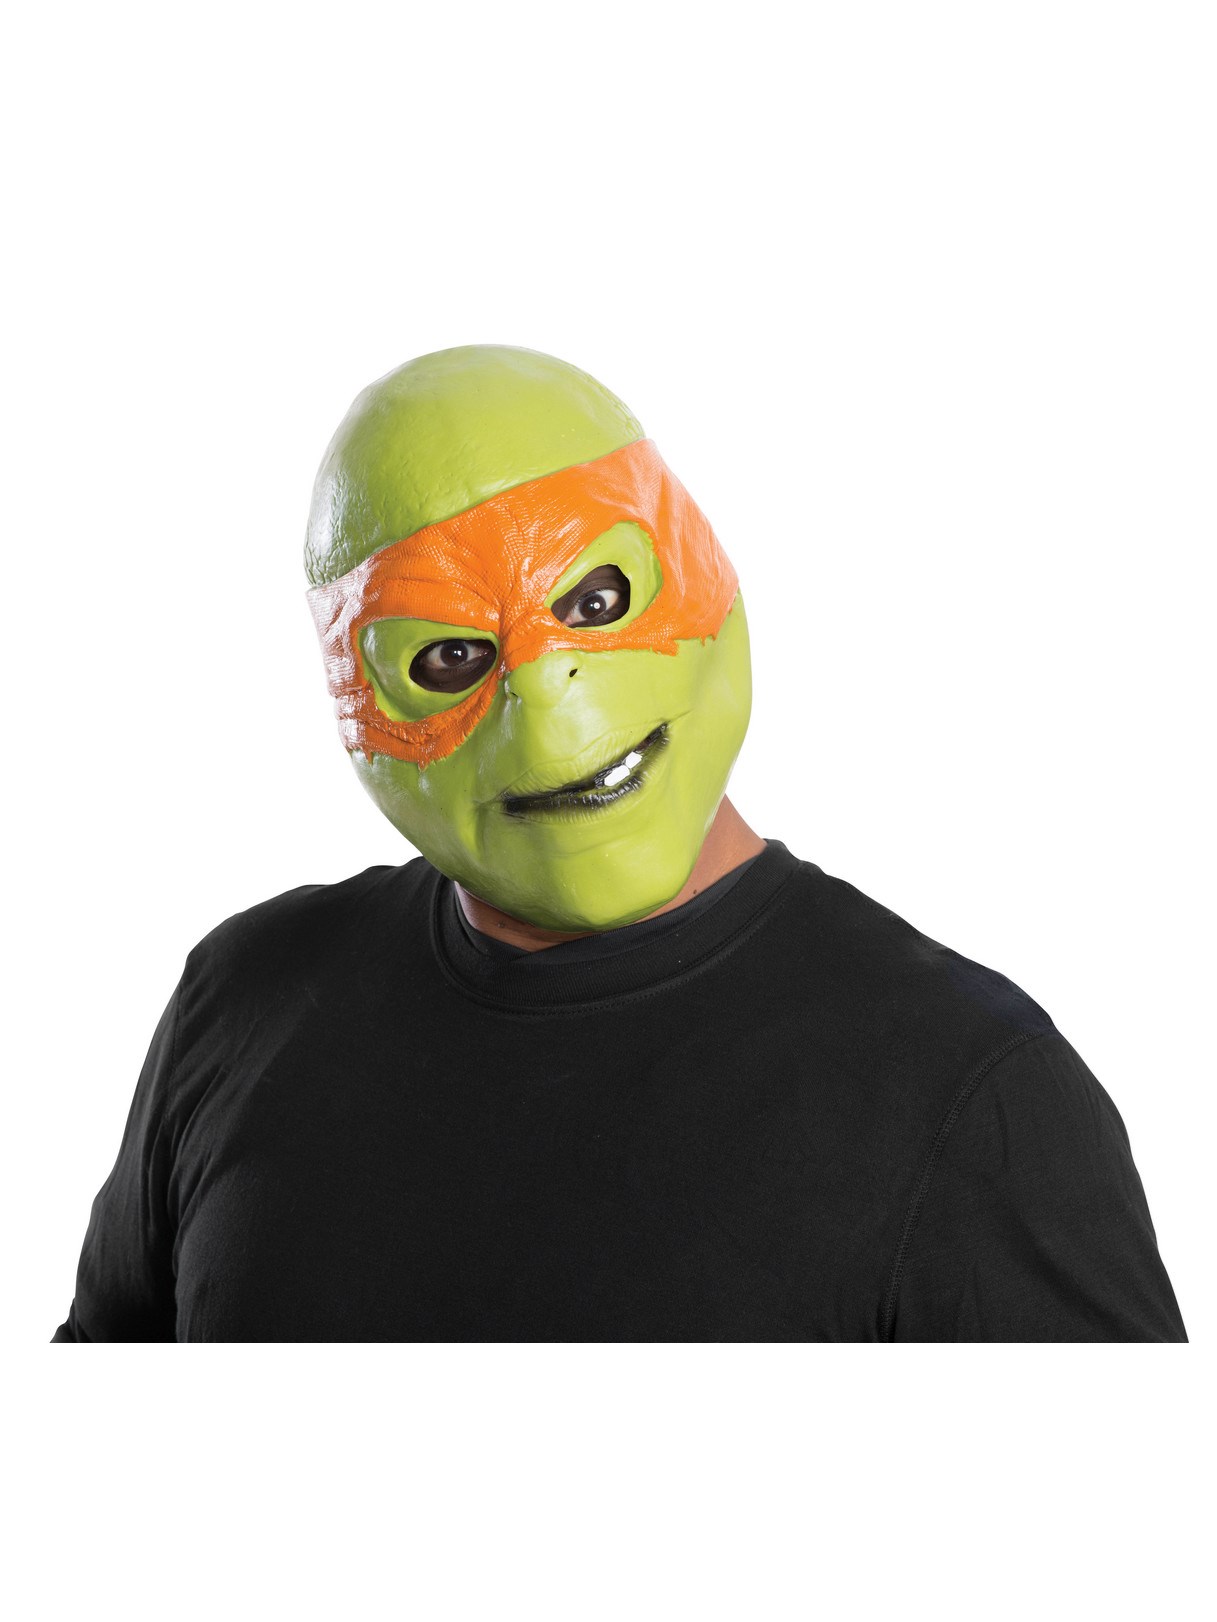 Teenage Mutant Ninja Turtle Movie - Michelangelo Adult Mask